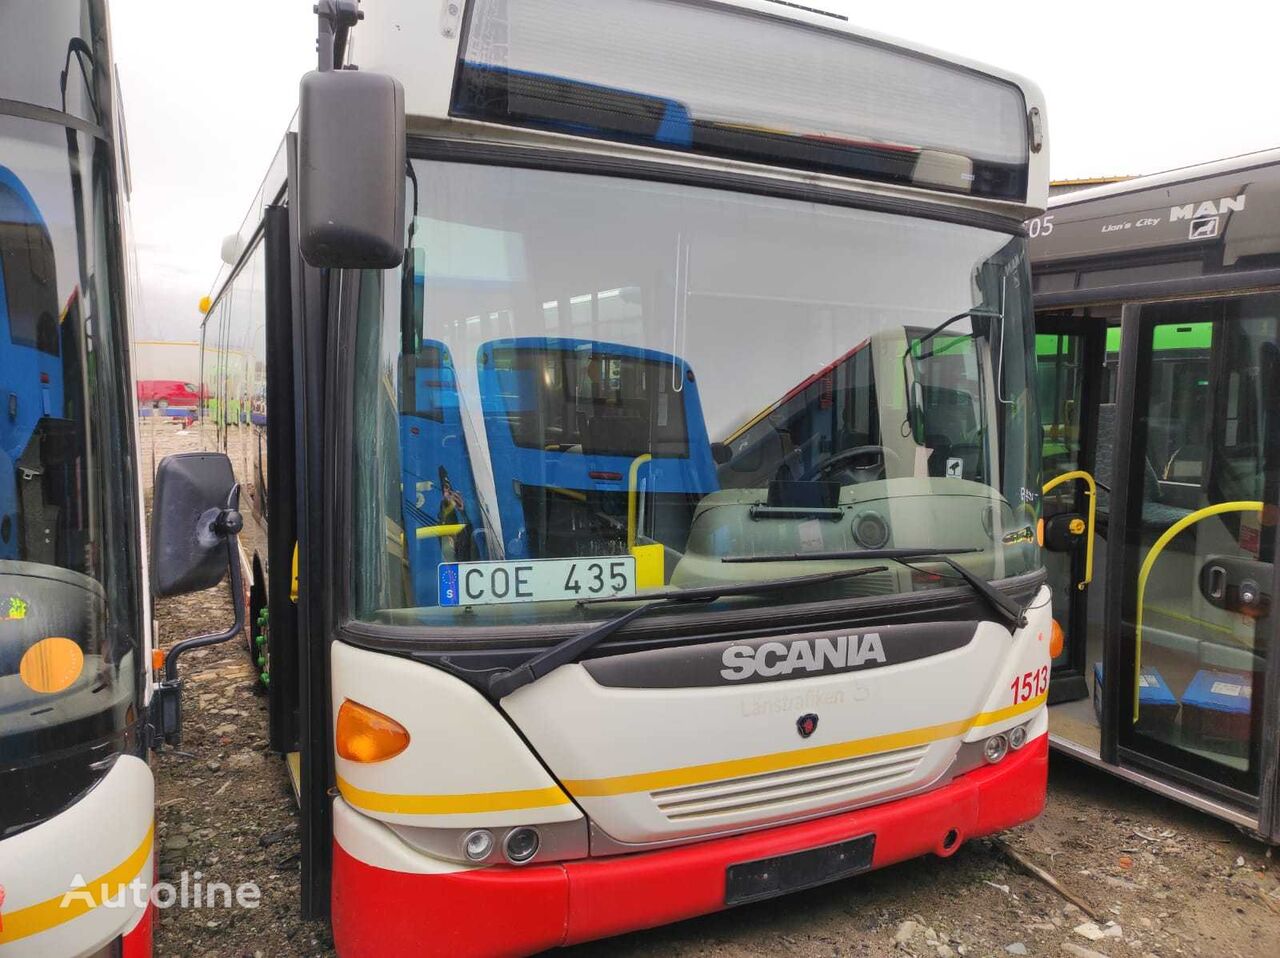 autre bus Scania BUS CK 320 UB6x2*4LB / DC9 32 Engine / 6HP604C N C/5 Gerabox pour pièces détachées